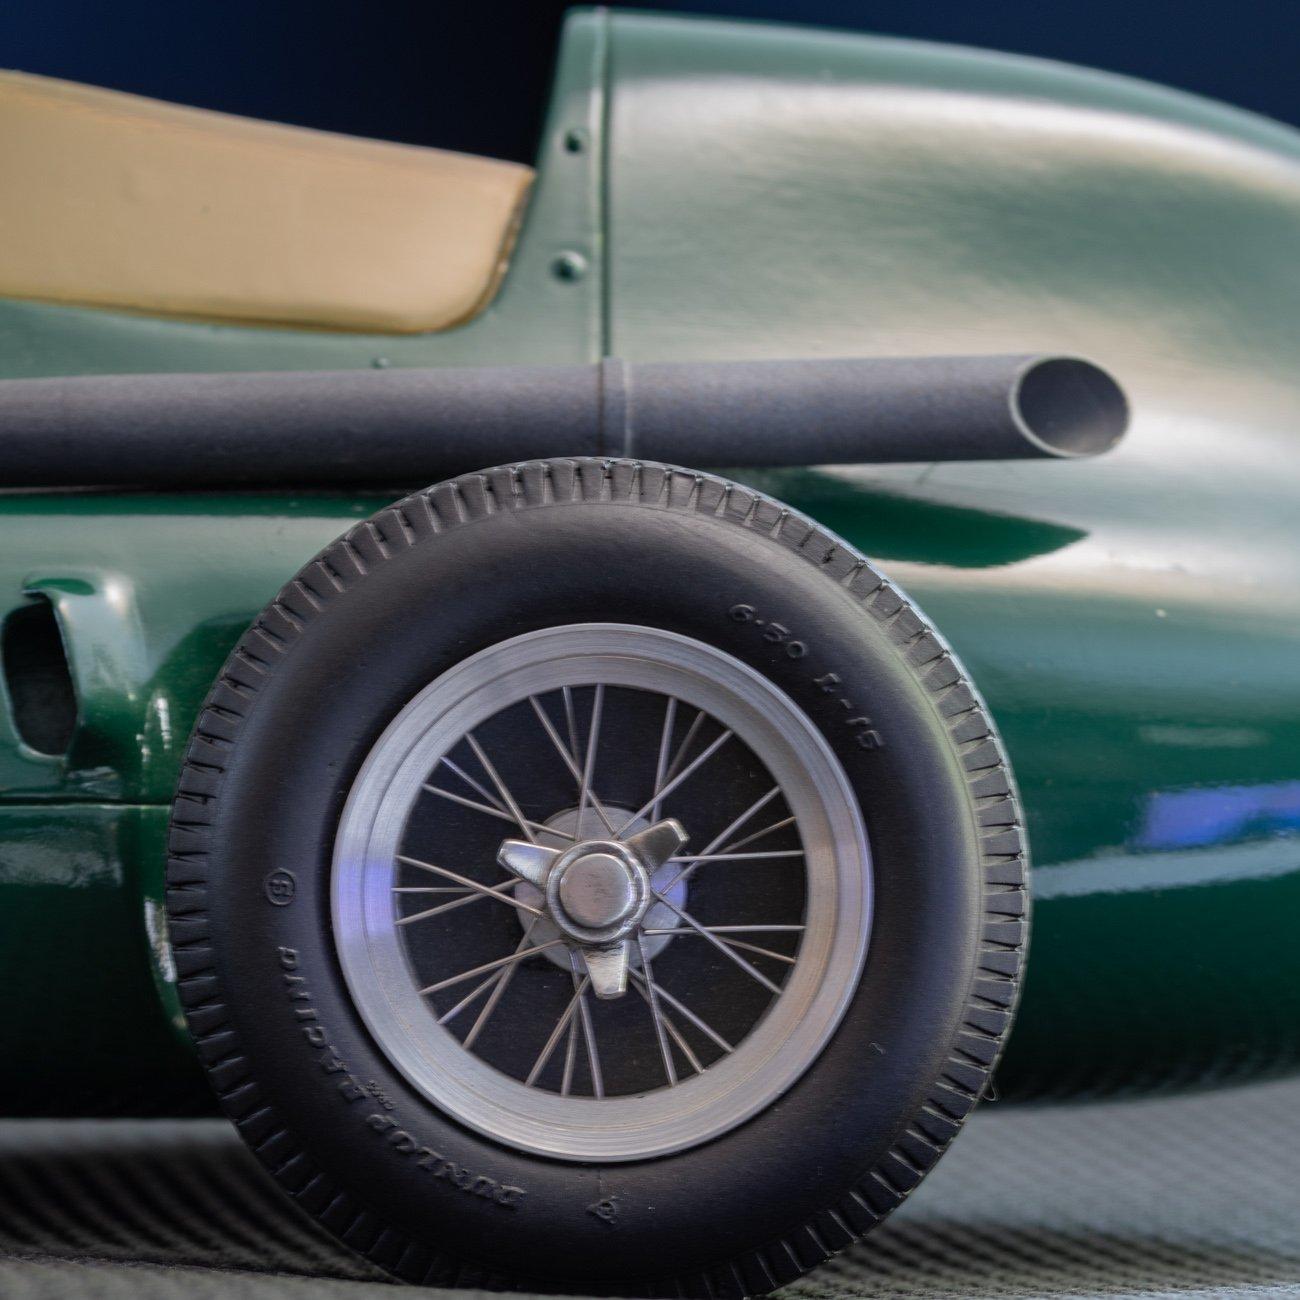 British Model of the Formula One Vanwall Racing Car